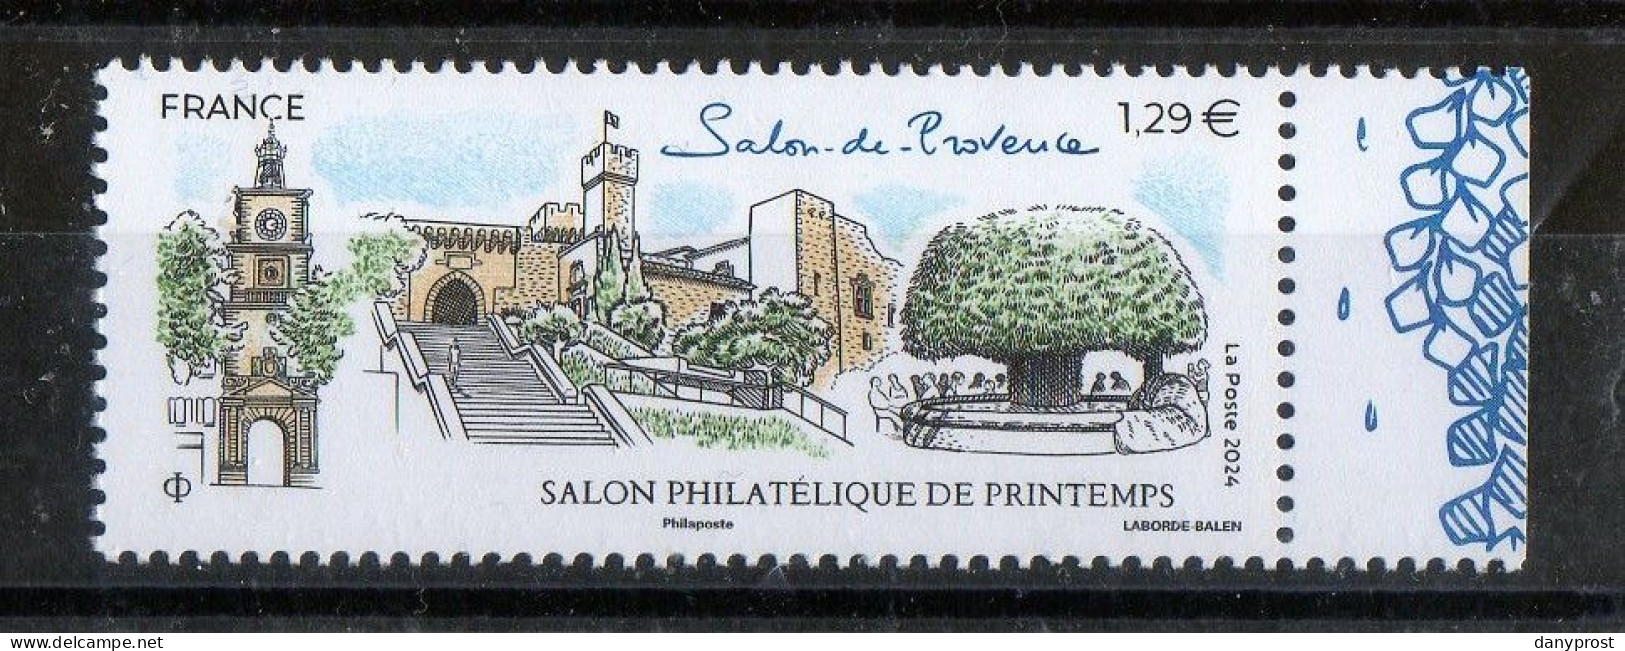 FR 2024 -" SALON PHILATELIQUE DE PRINTEMPS-Salon De Provence  " 1 T  LV 20g  à 1.29 € - 1 Marge Droit Illustrée - Neuf** - Unused Stamps